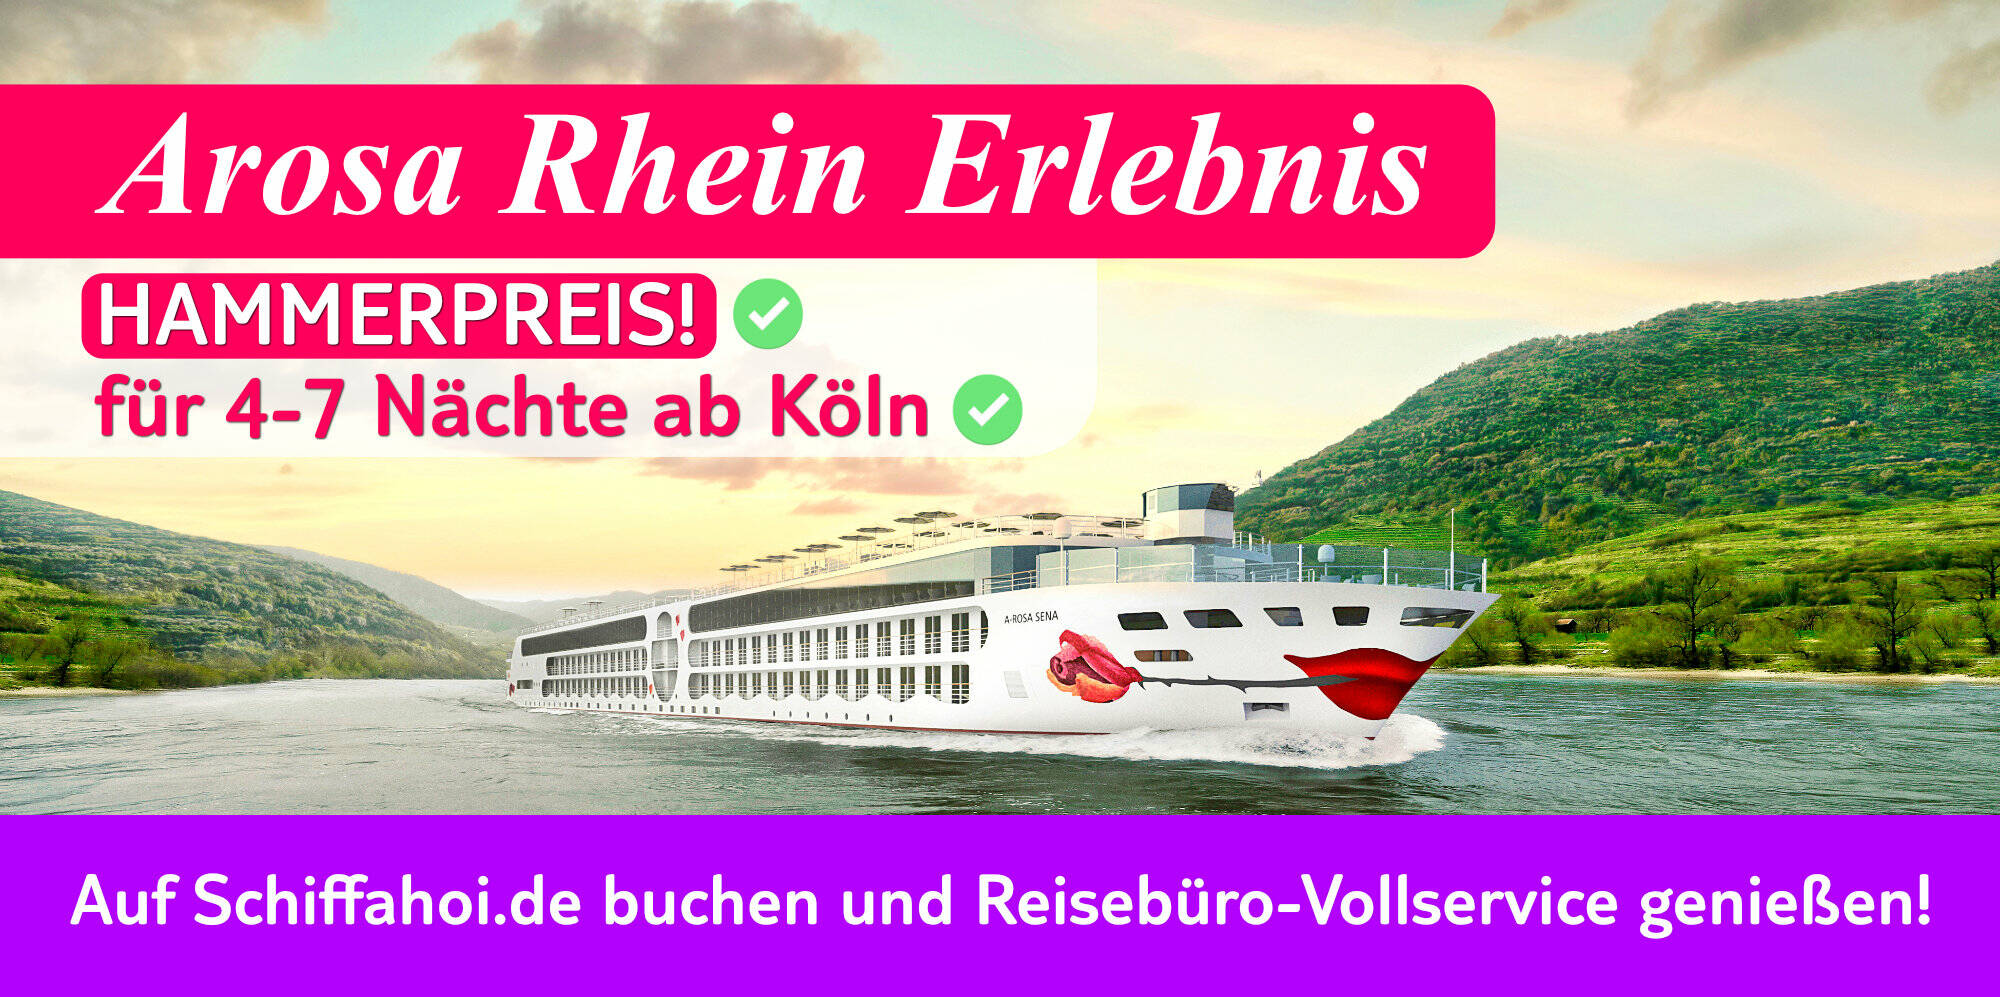 Arosa Rhein Specials